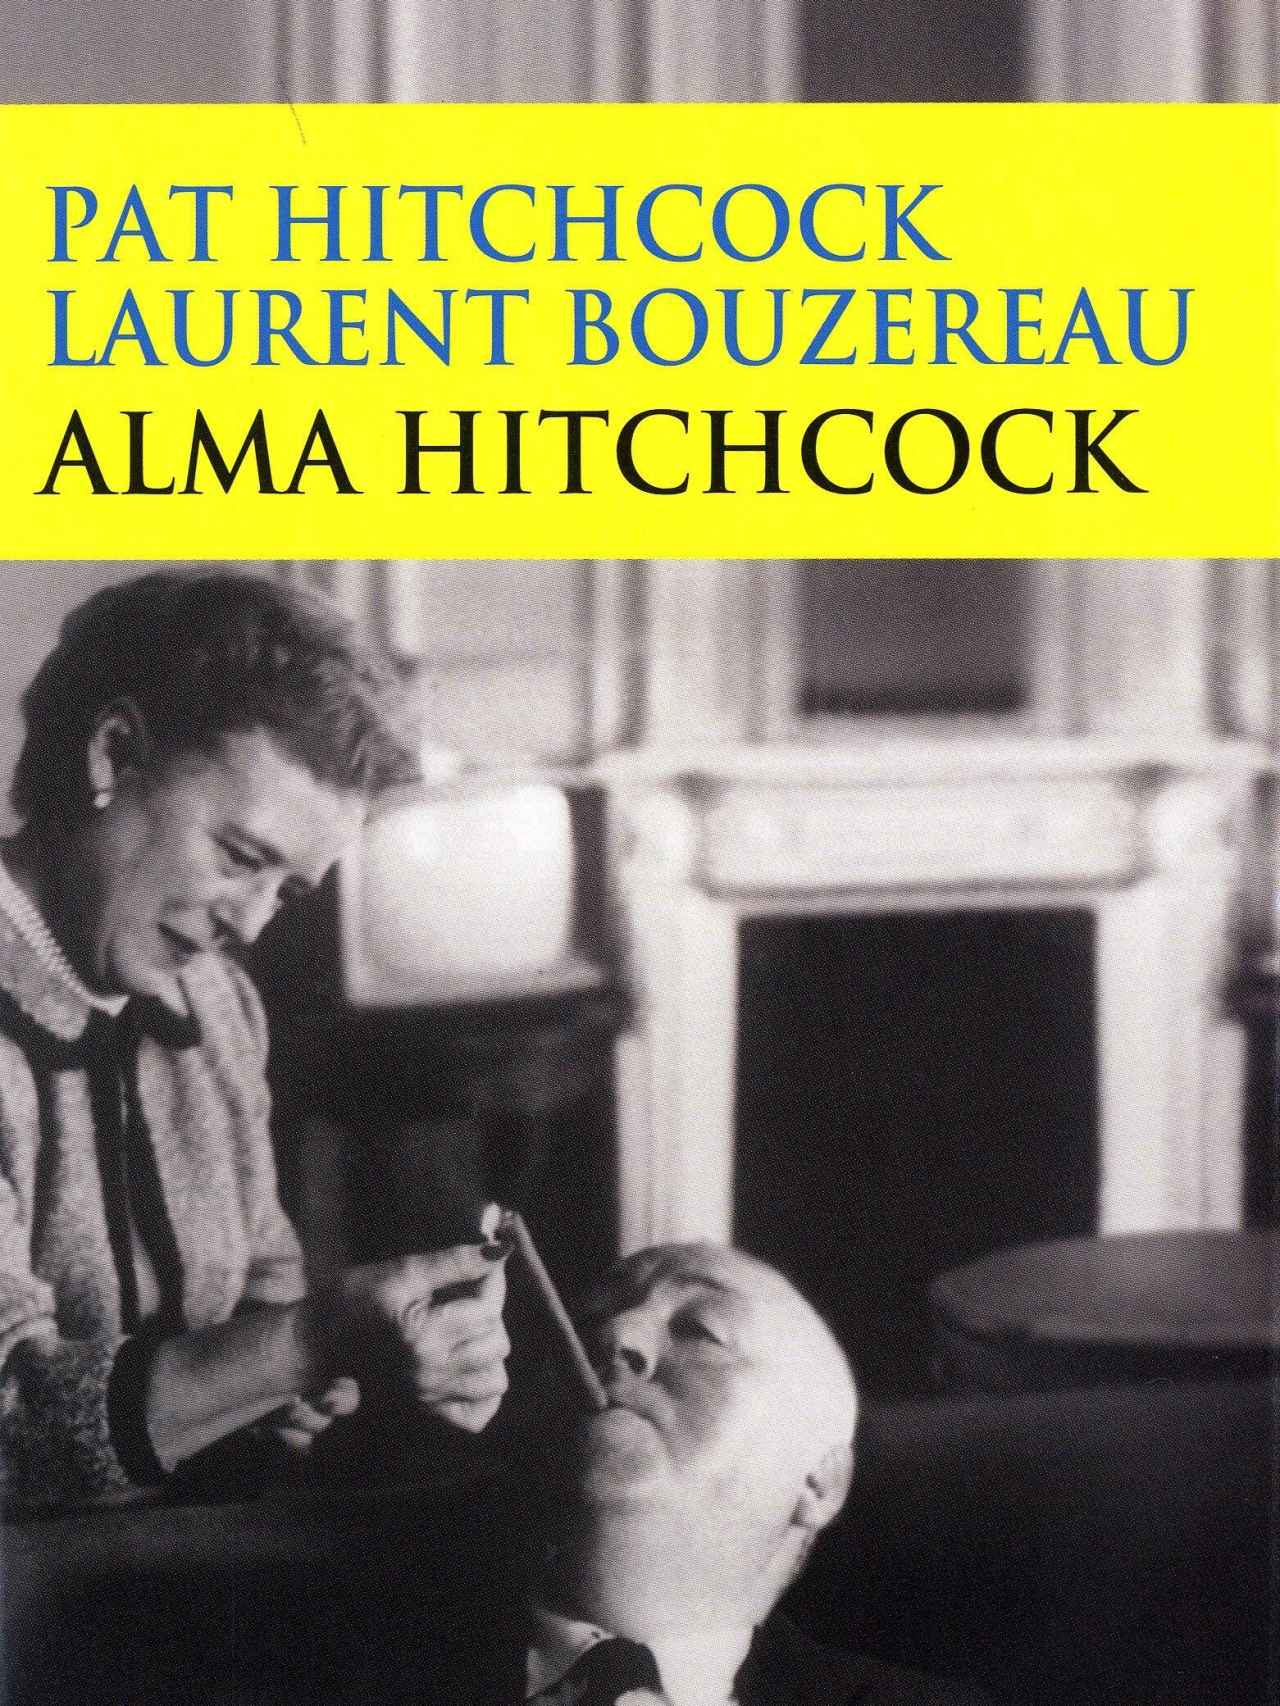 Portada del libro 'Alma Hitchcock' (2009), de Laurent Bouzereau.